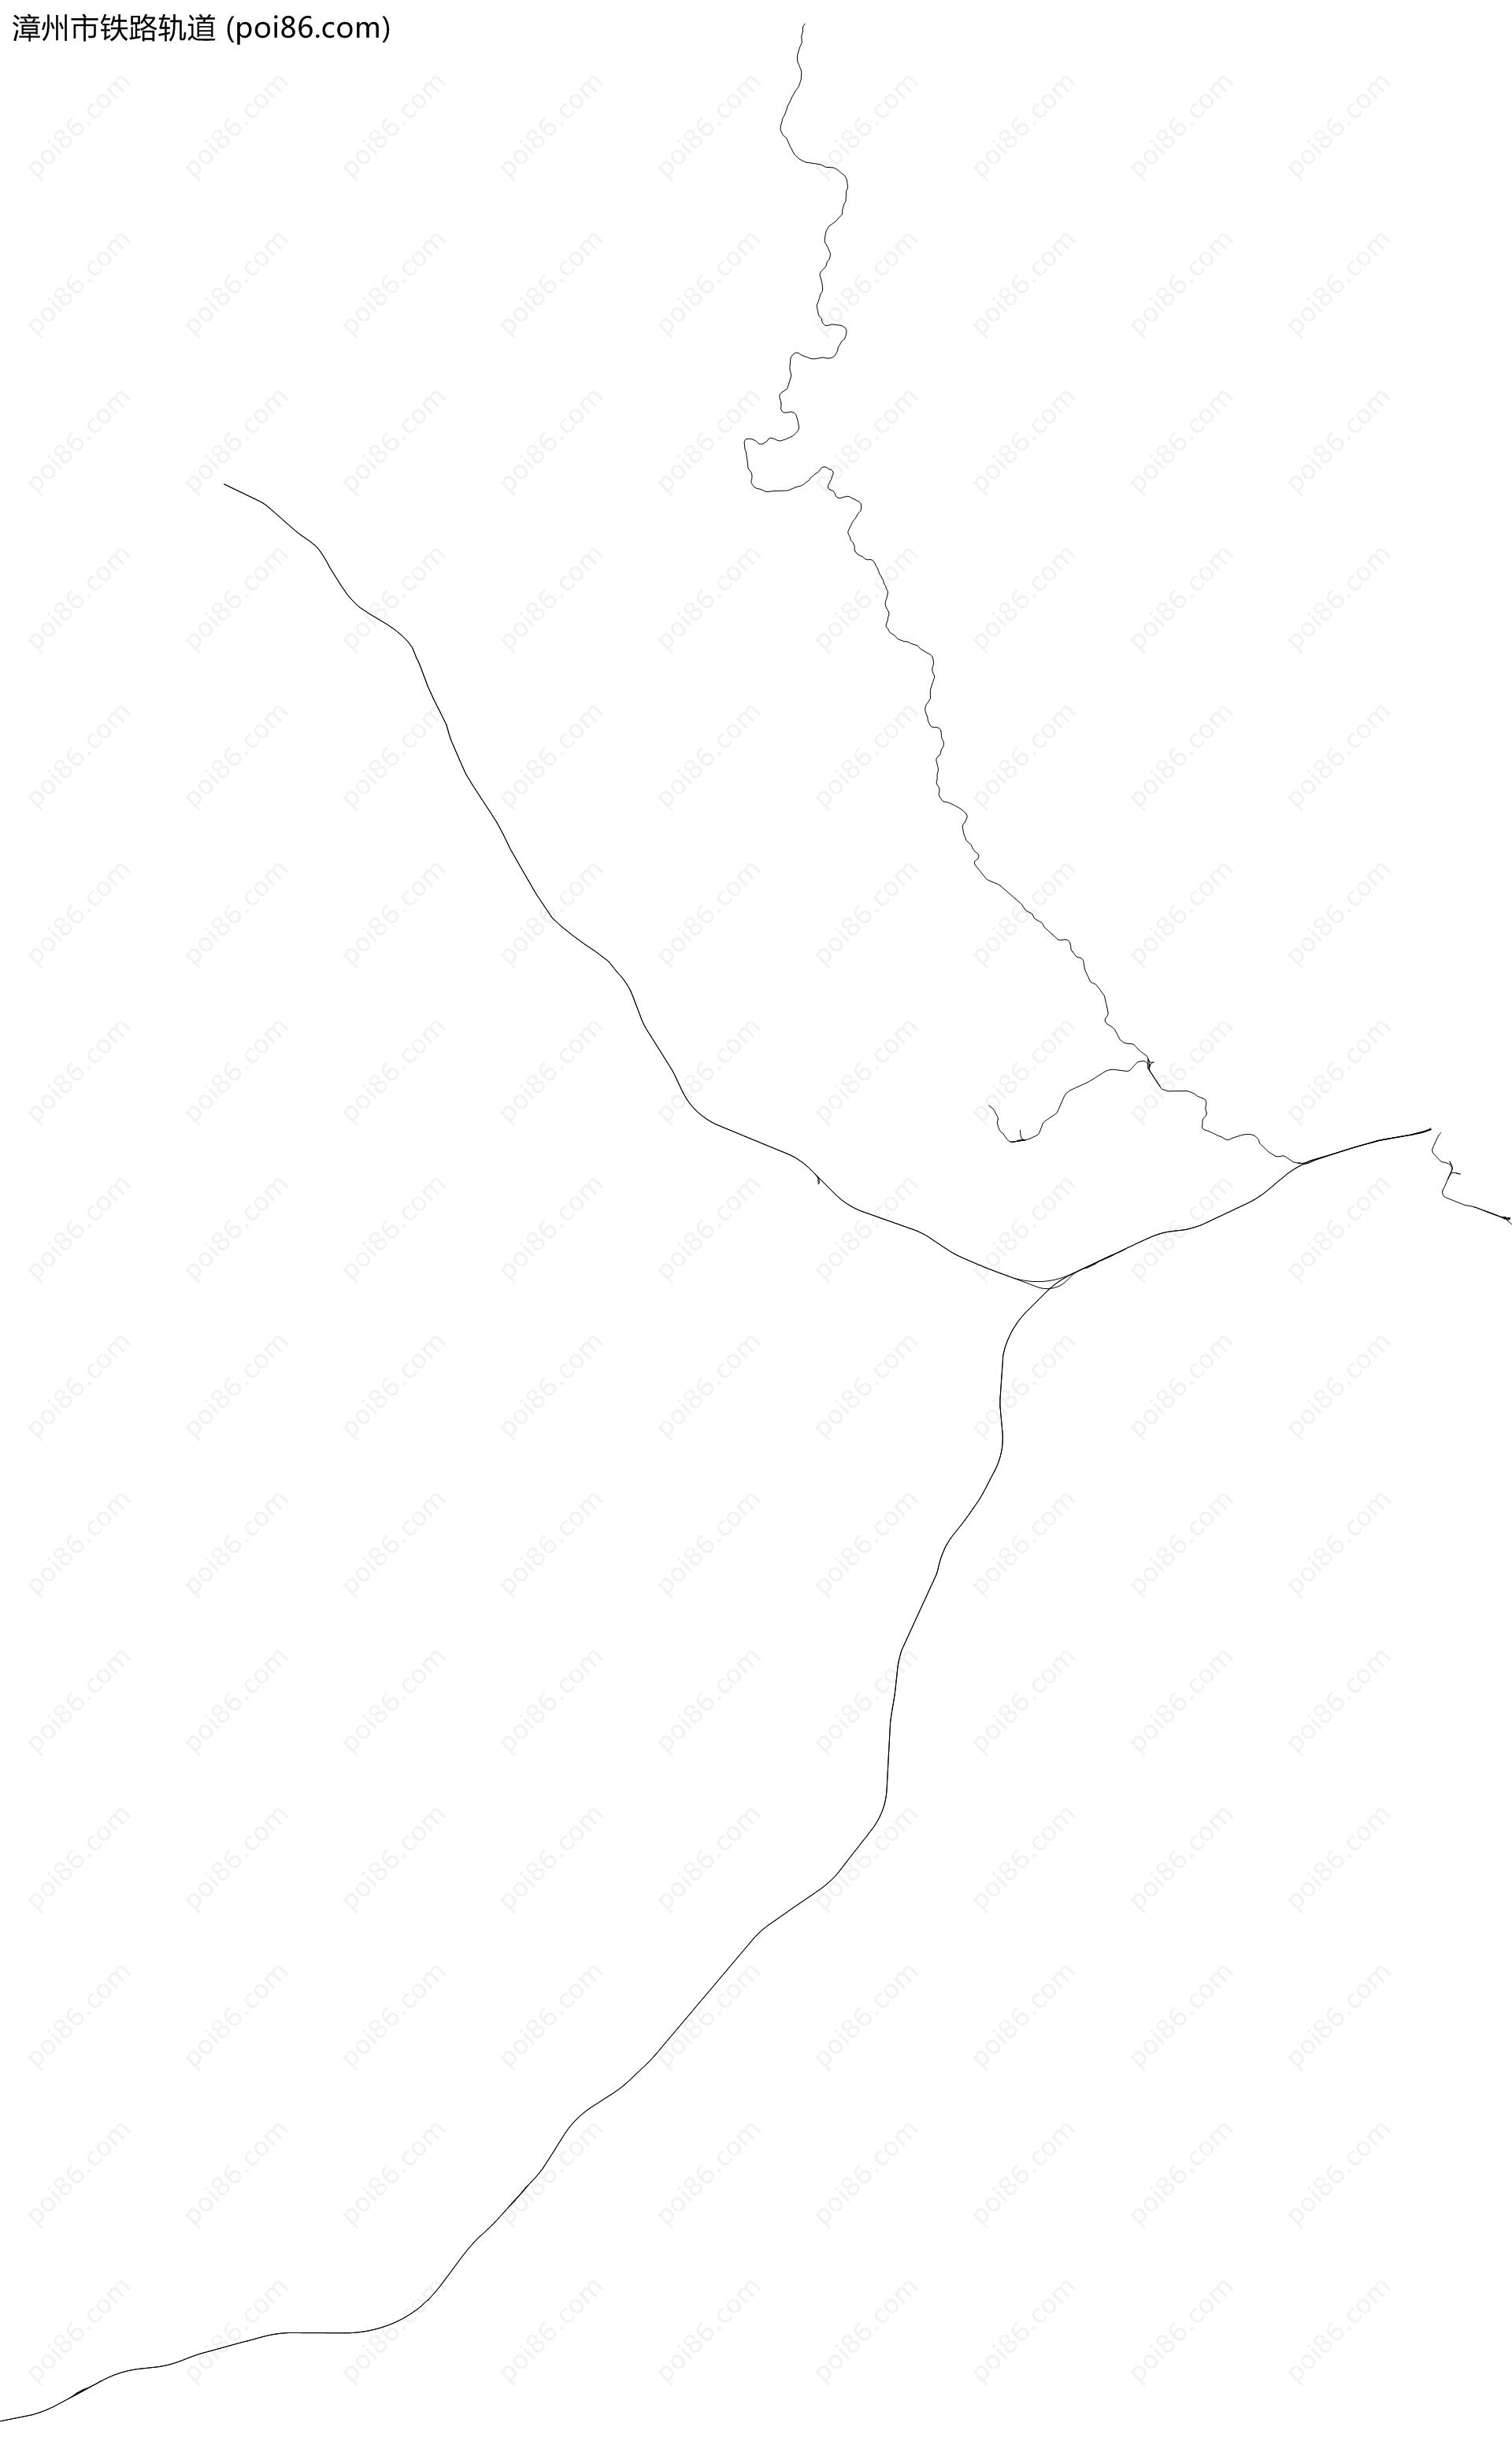 漳州市铁路轨道地图